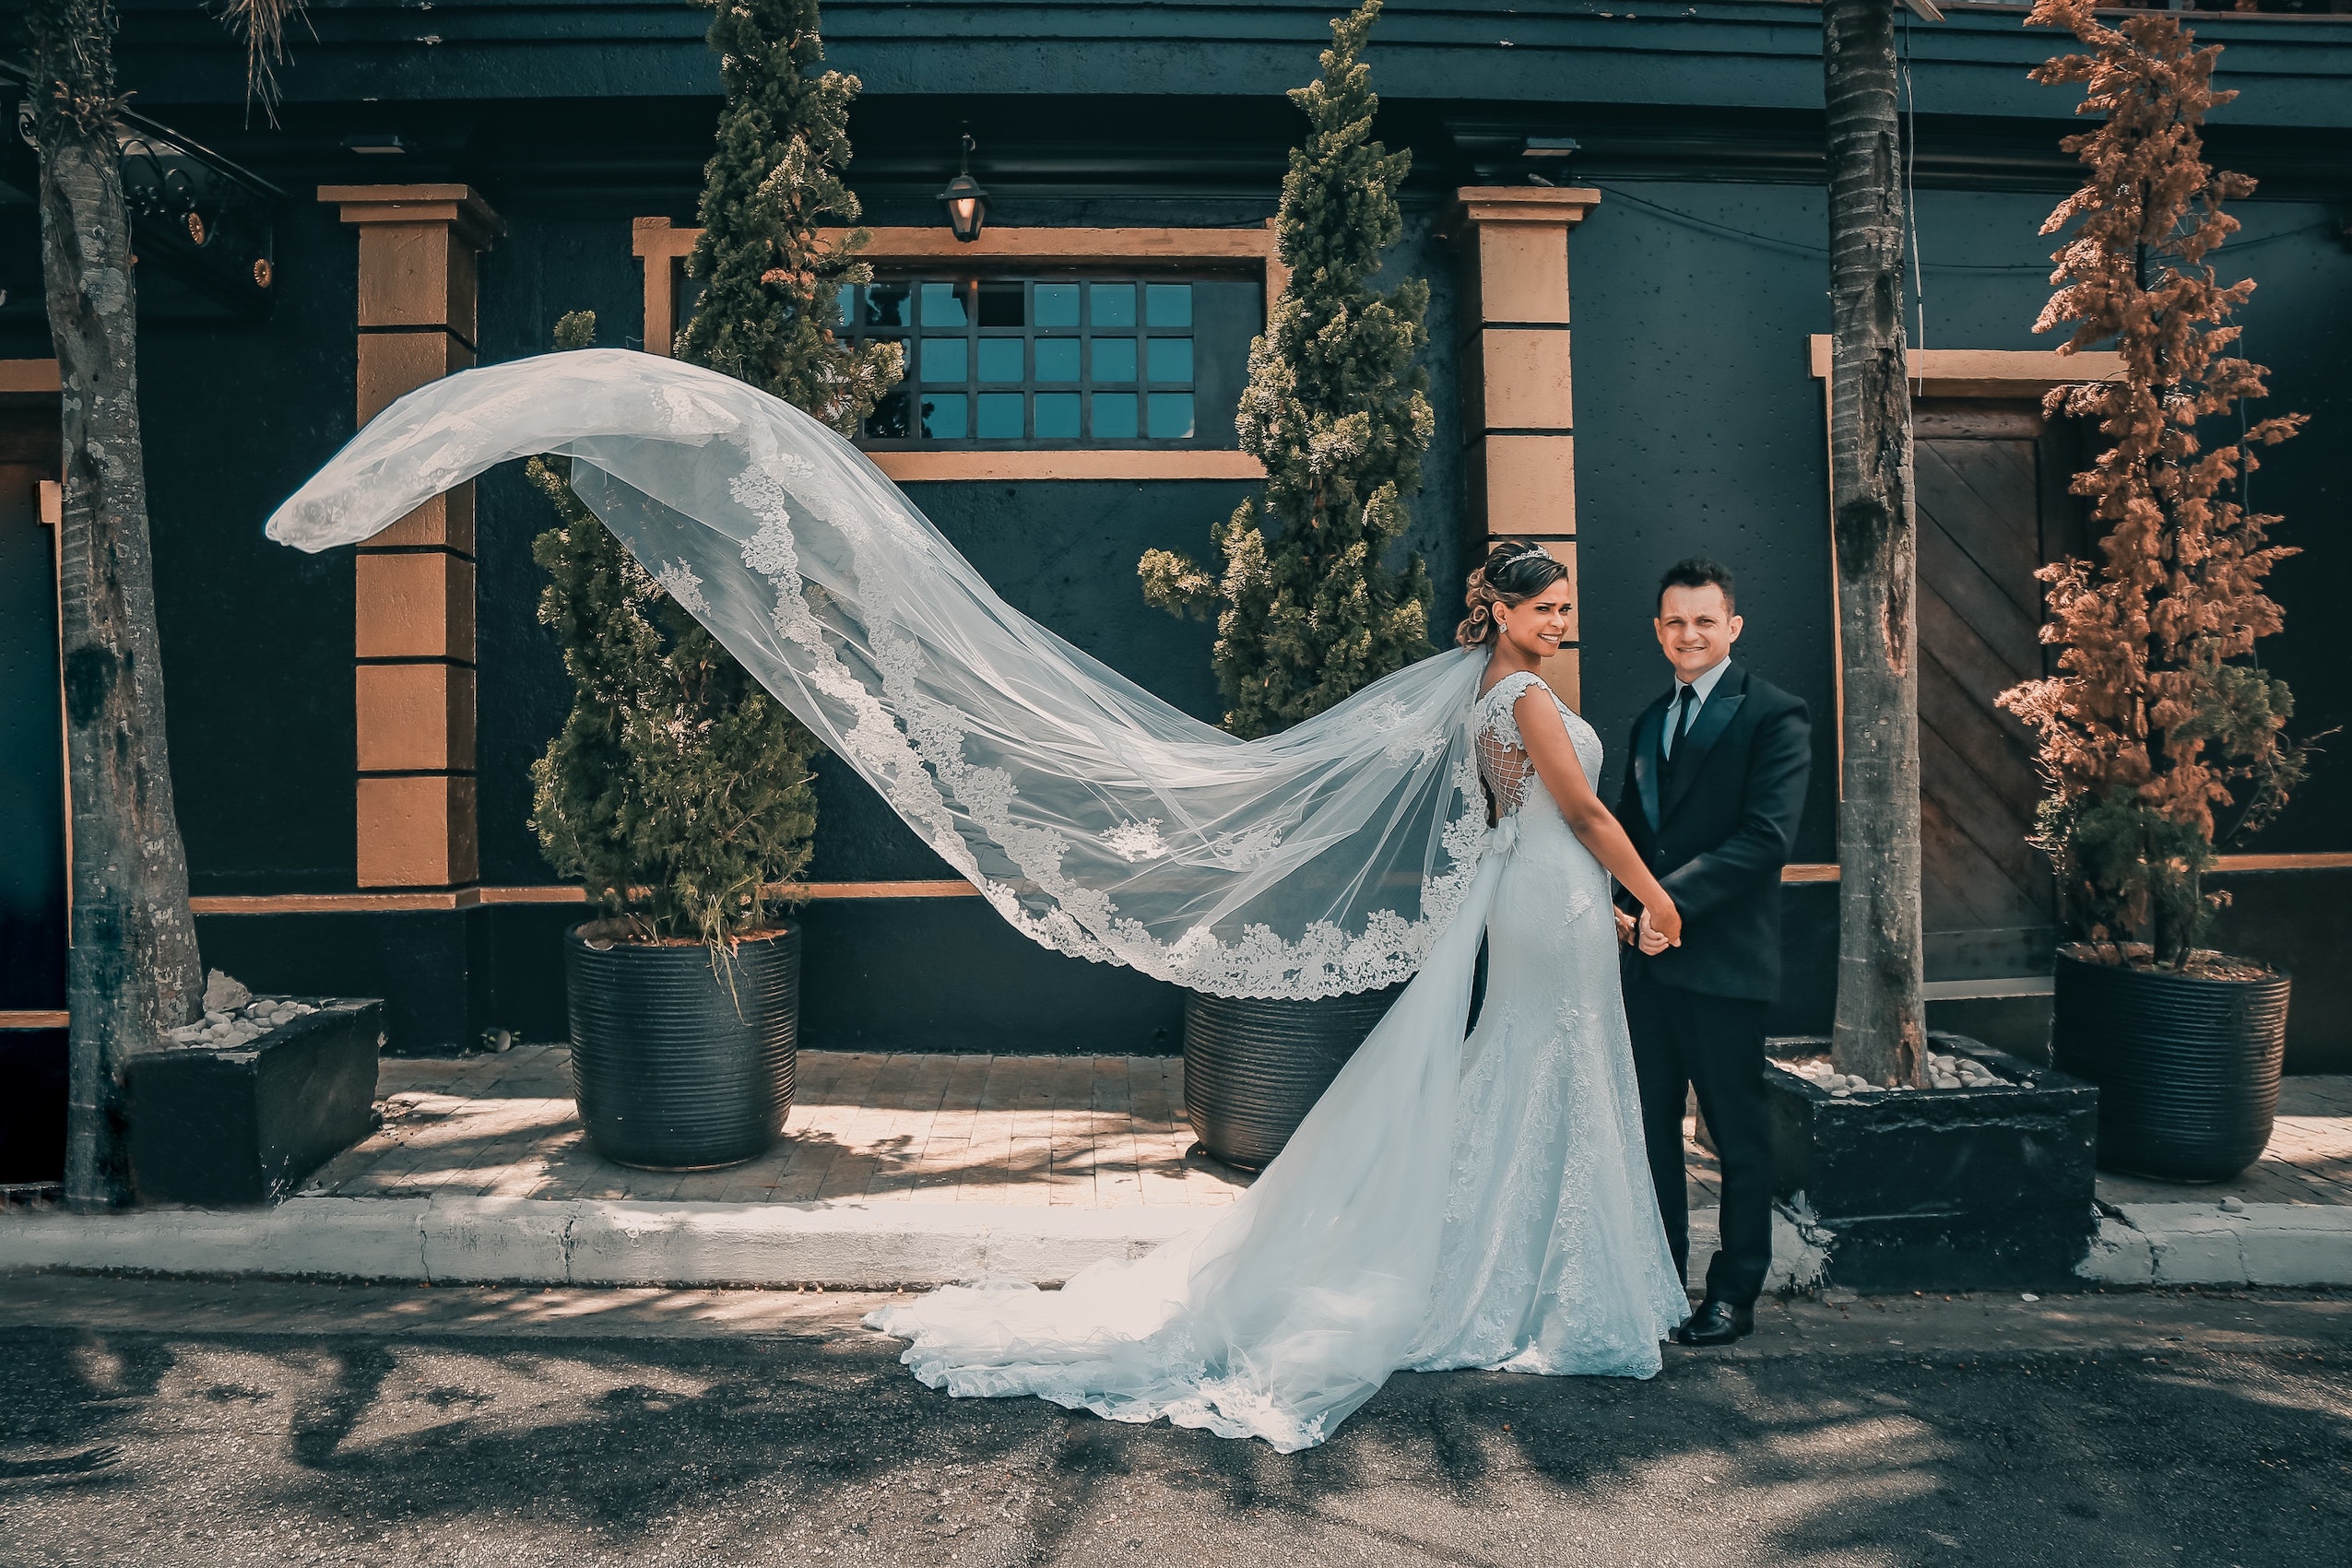 Romantische-Hochzeitsfotografie-mit-verliebtem-Brautpaar-Blumenstrauß-Hochzeitskleid-2